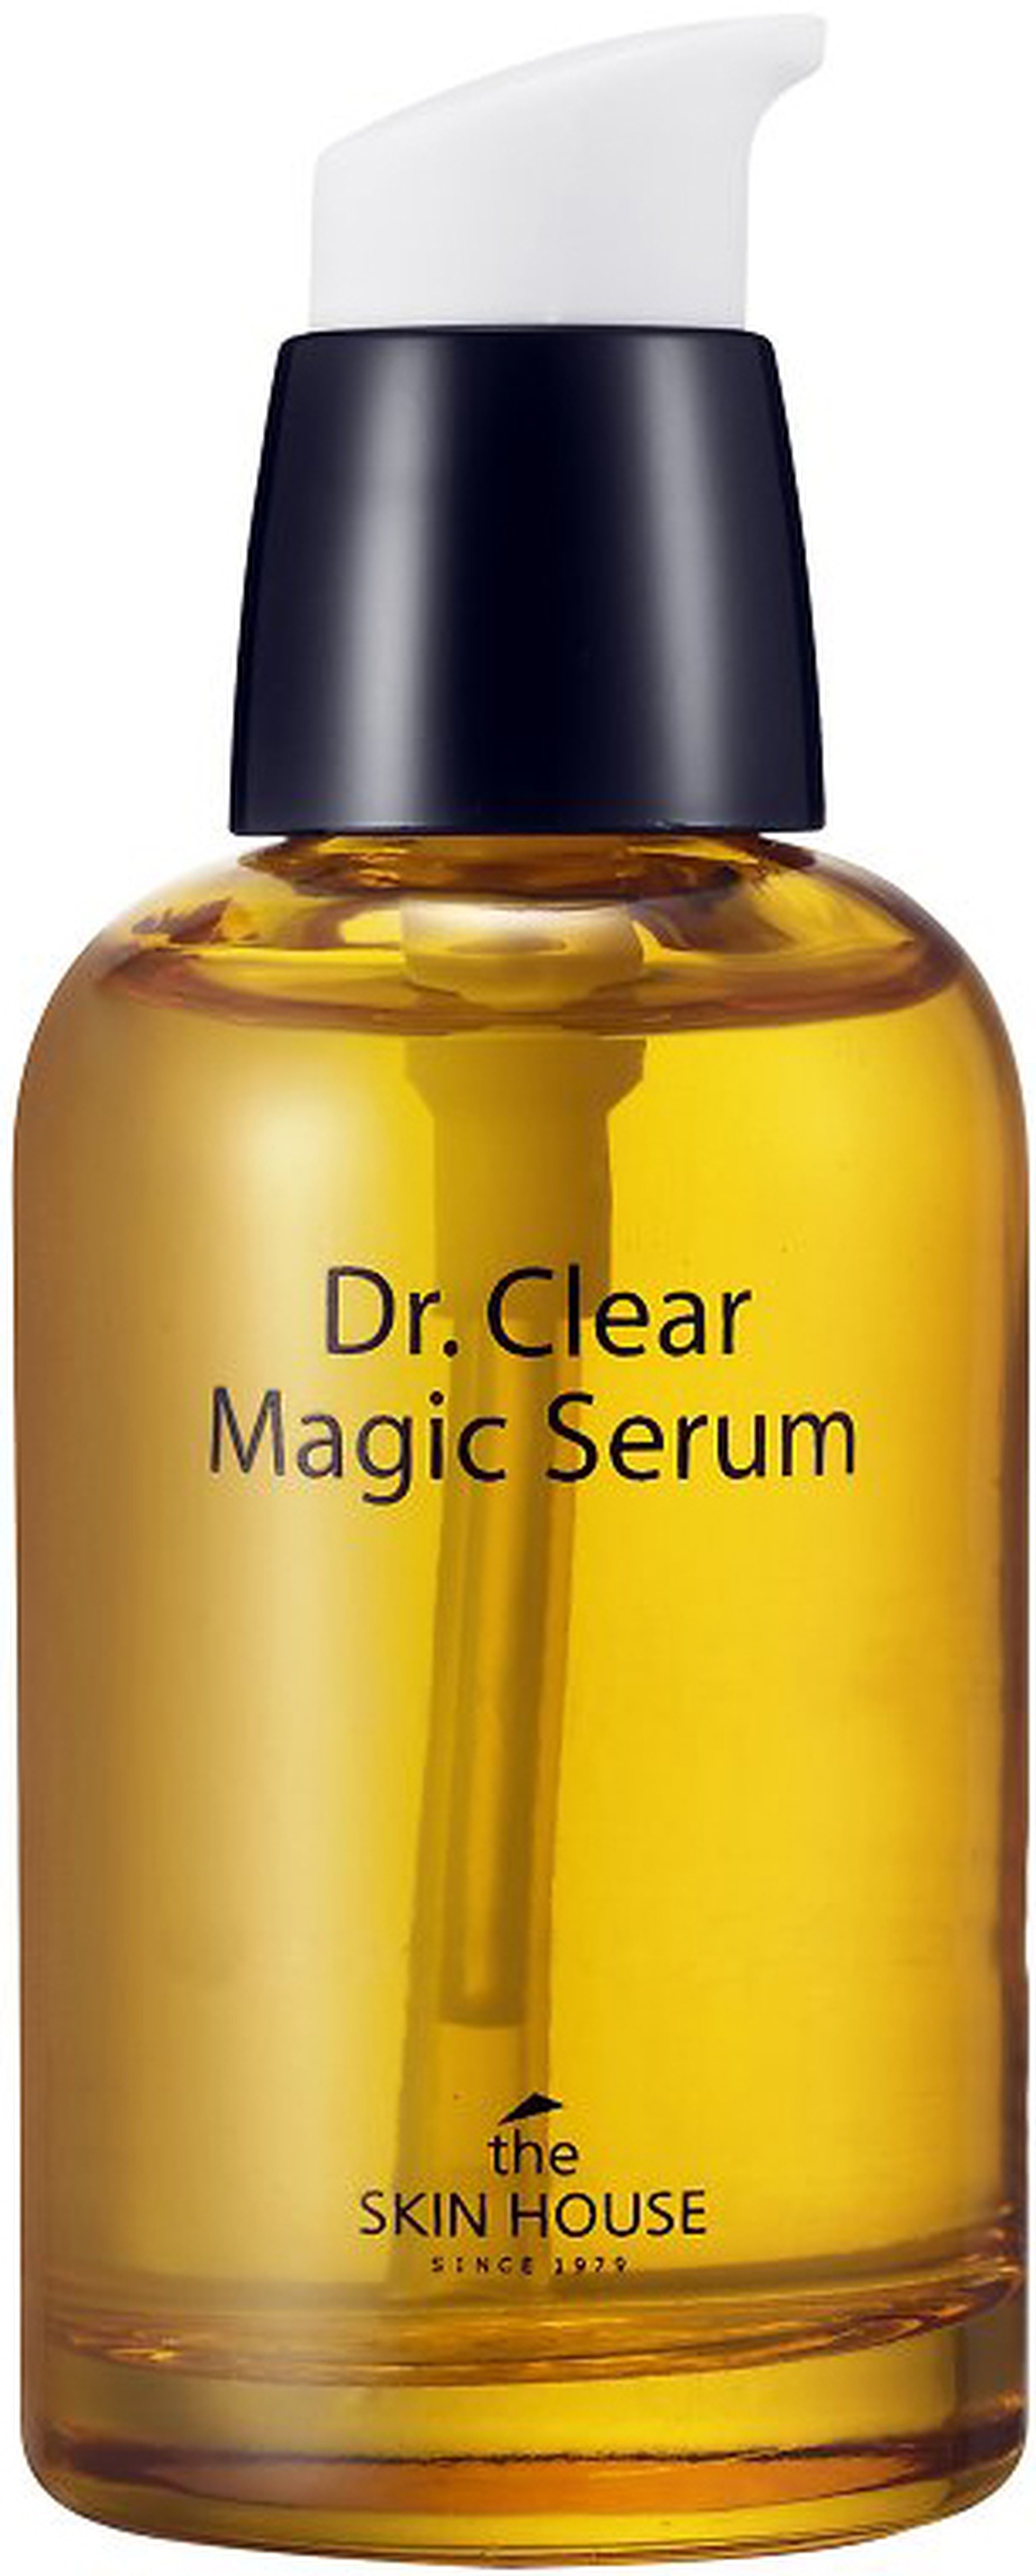 Skin House "Dr. Clear Magic" Сыворотка для устранения воспалений на коже, 50 мл фото